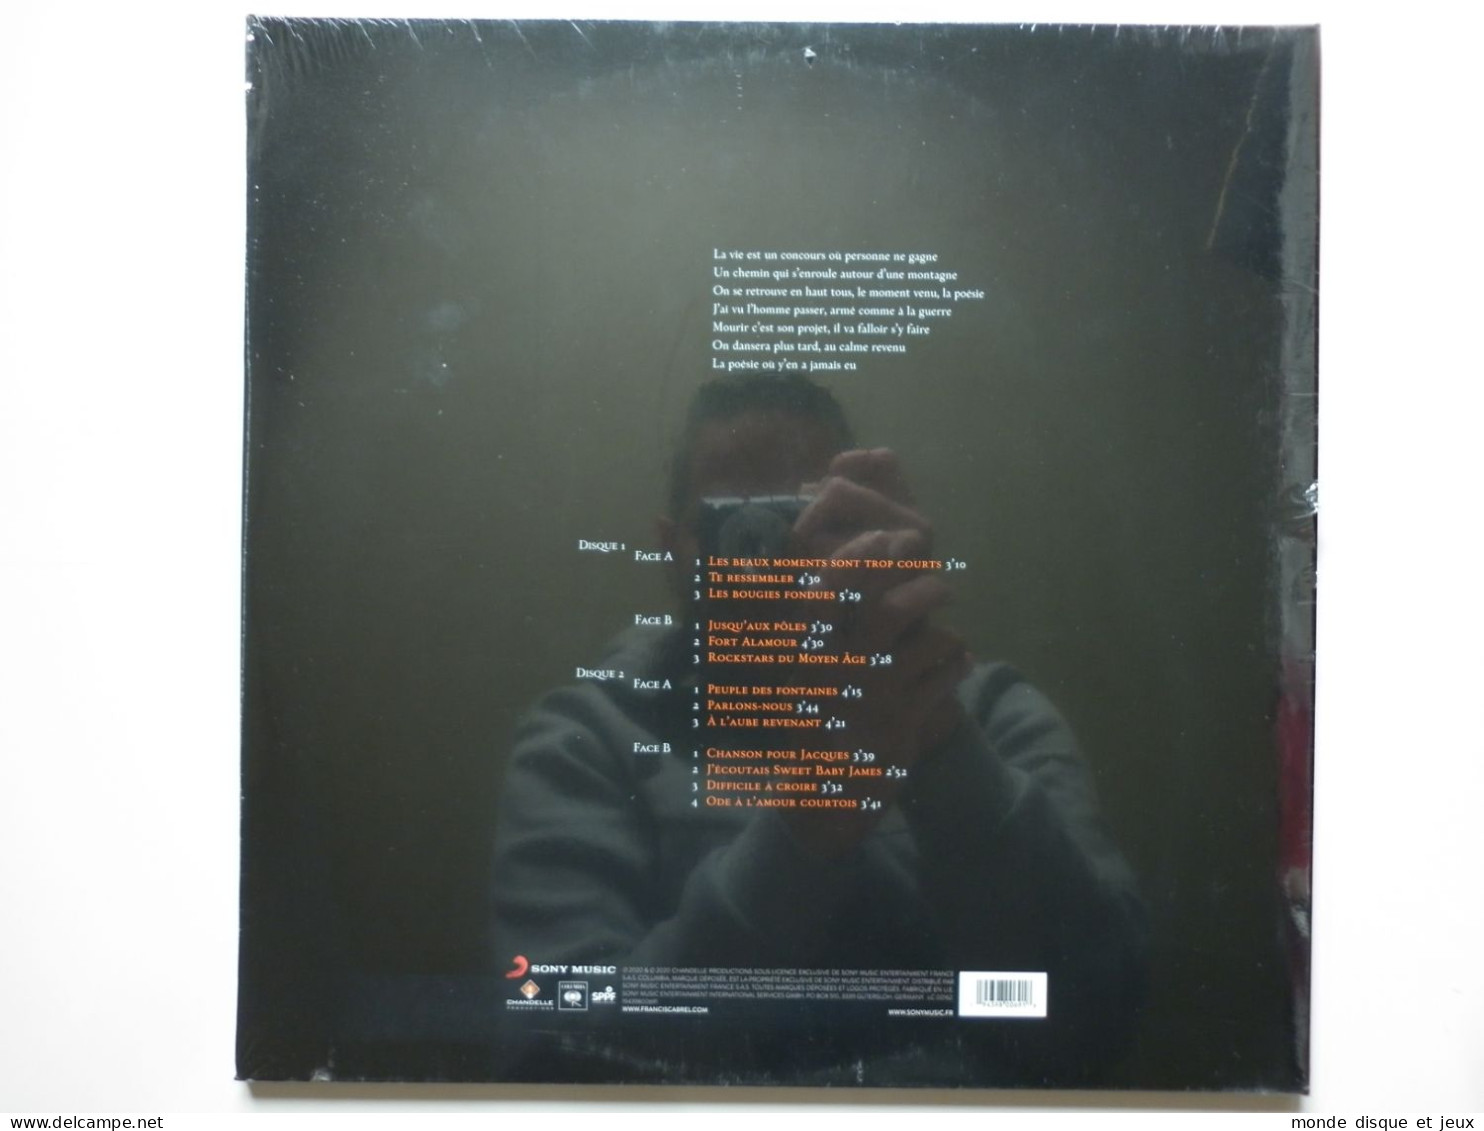 Francis Cabrel Album Double 33Tours Vinyles À L'aube Revenant - Autres - Musique Française